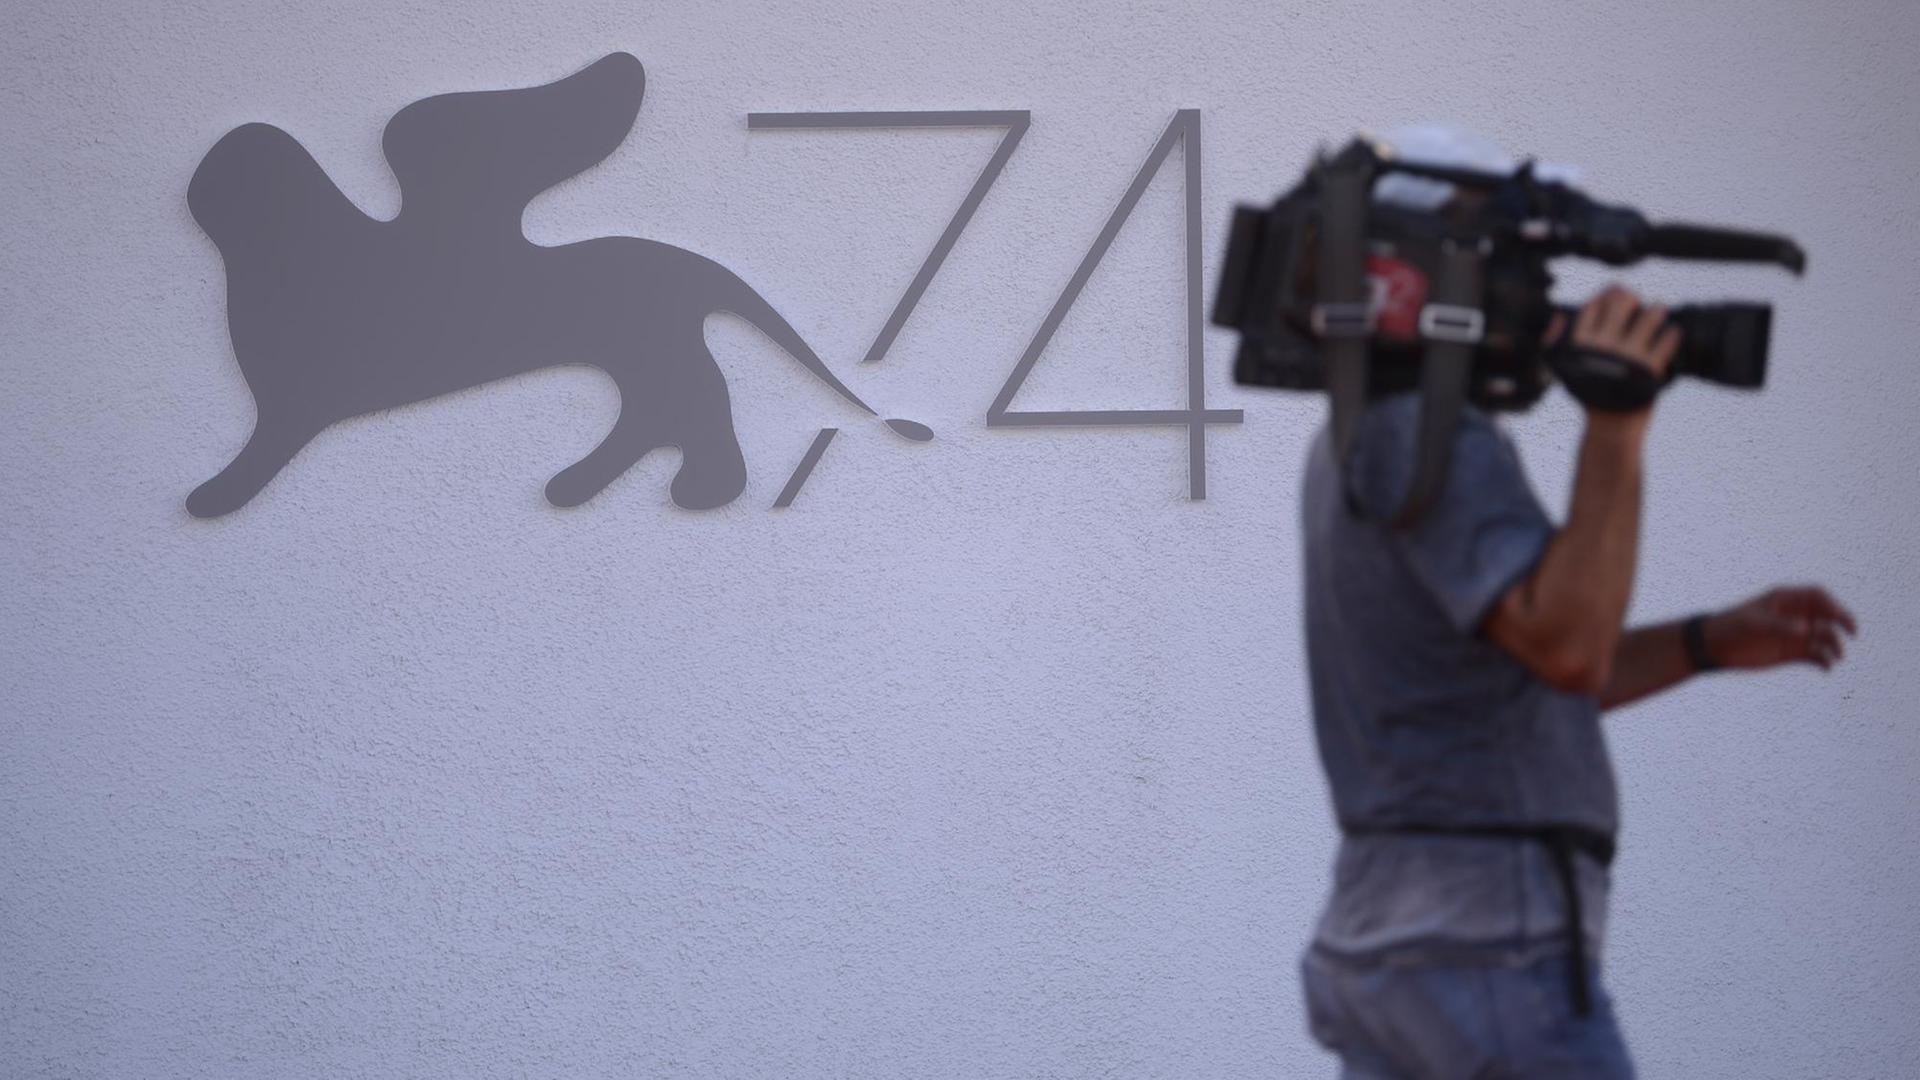 Ein Kameramann läuft am Logo der Filmfestspiele mit dem Goldenen Löwen vorbei